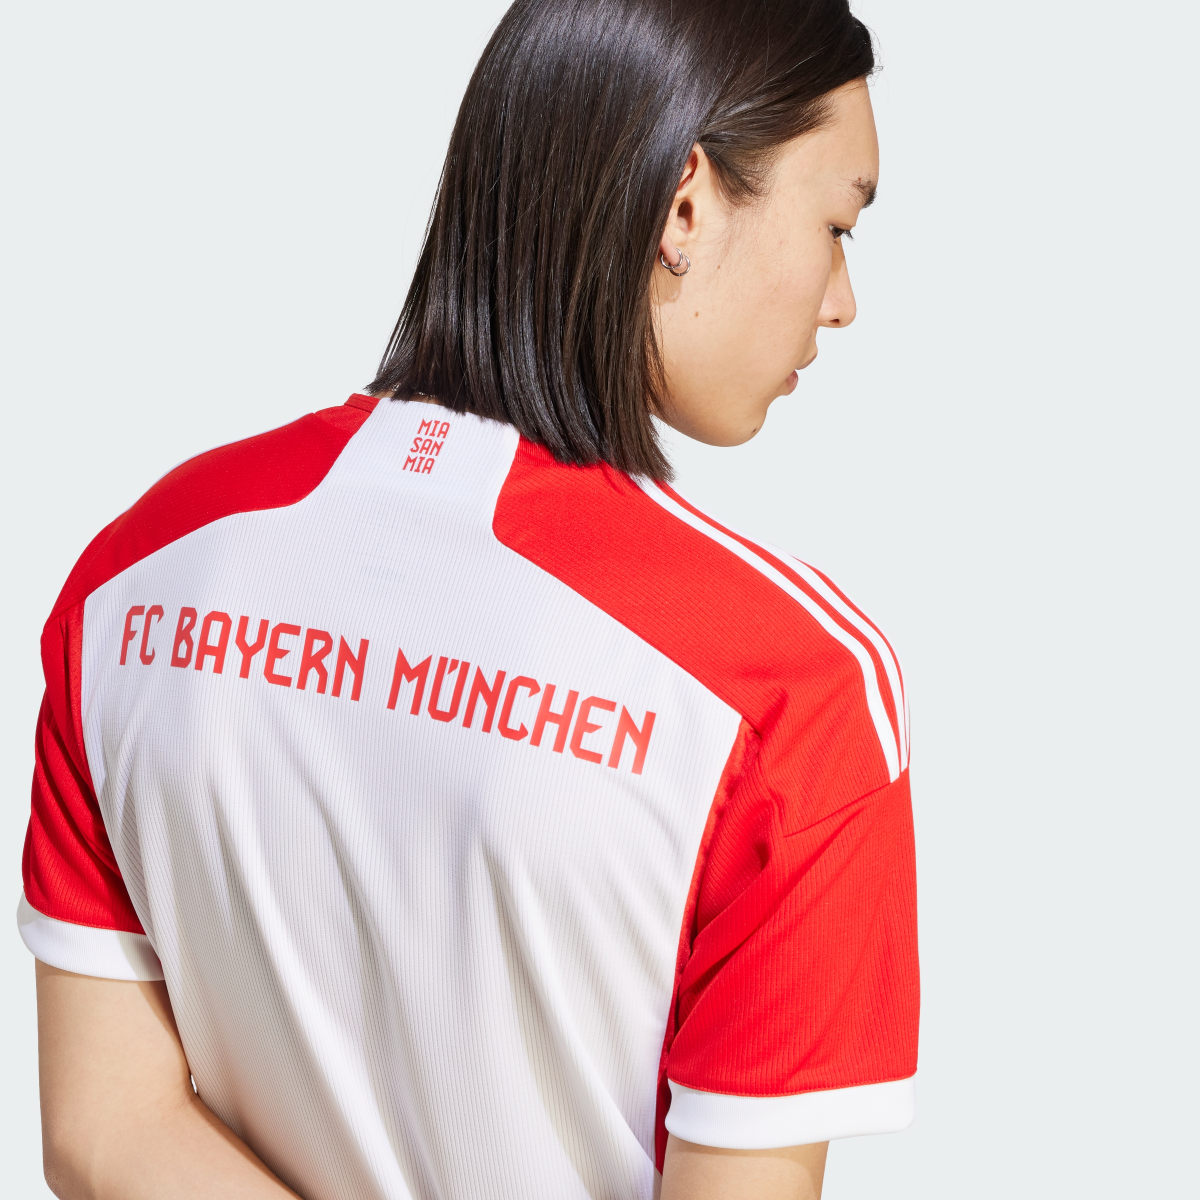 Adidas Camisola Principal 23/24 da Equipa Feminina do FC Bayern München. 6